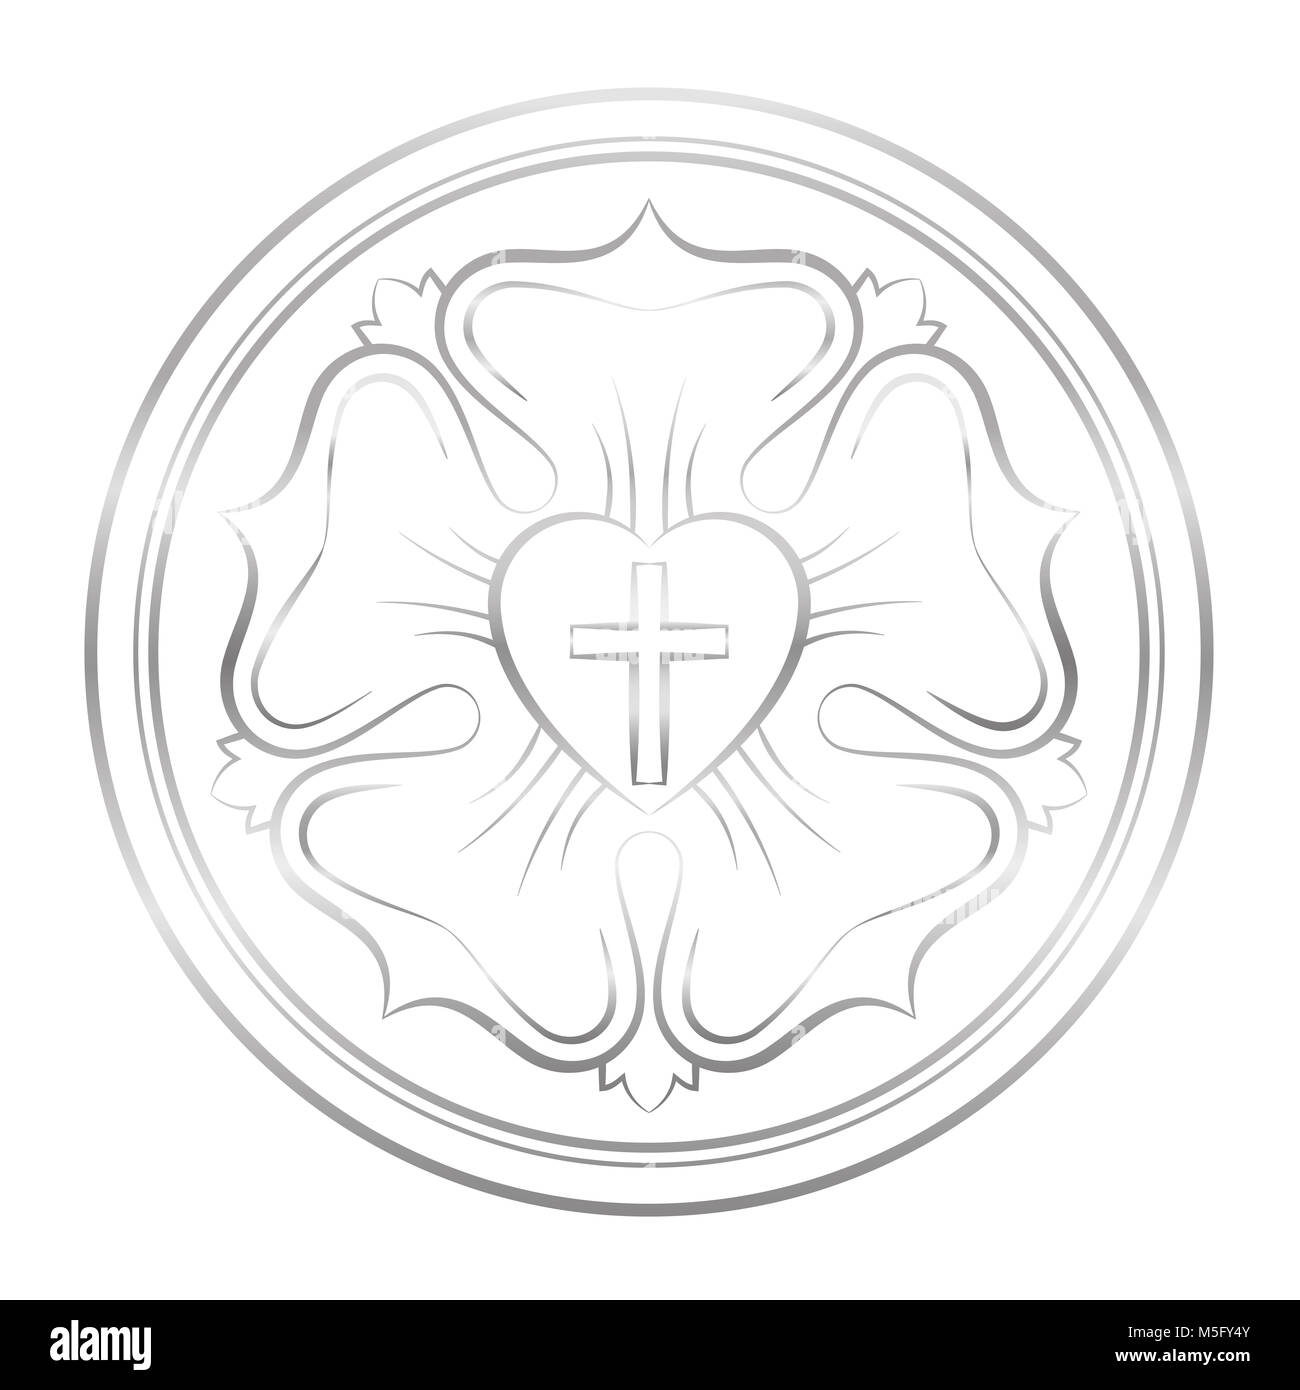 Símbolo de Lutero. Símbolo del Luteranismo y protestantes, que consta de una cruz, un corazón, una rosa y un anillo de plata - ilustración en blanco. Foto de stock